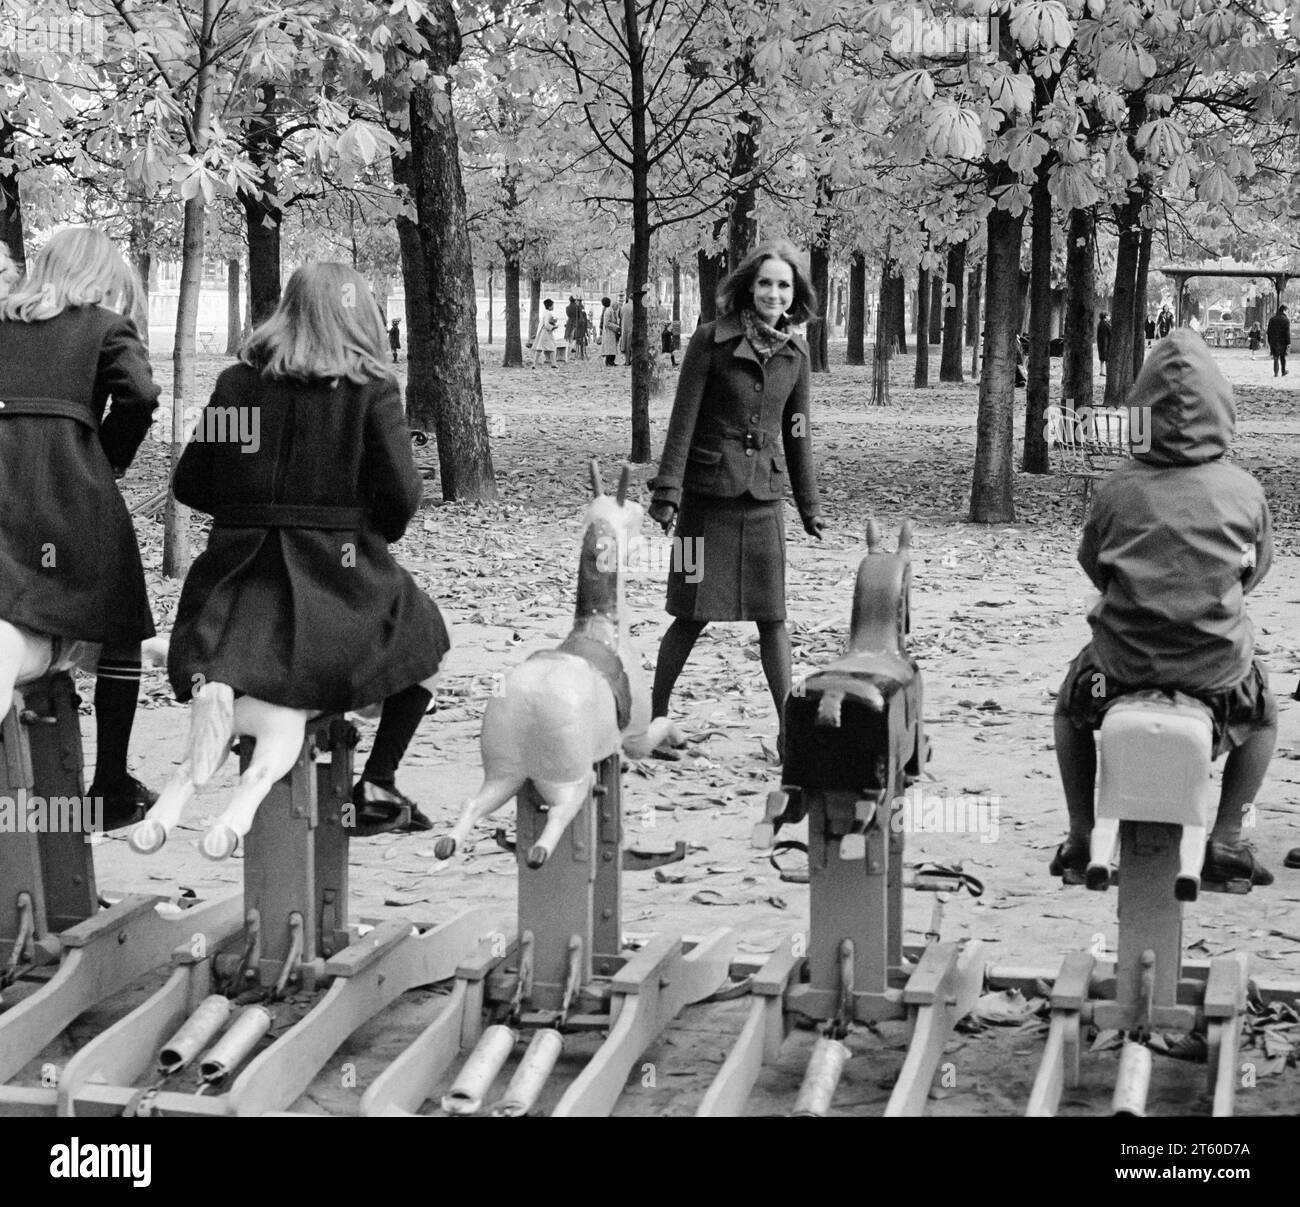 Années 1960, mannequin femme regarde des enfants jouant sur un carrousel de chevaux, jardin des Tuileries, Paris, France, Europe, Banque D'Images